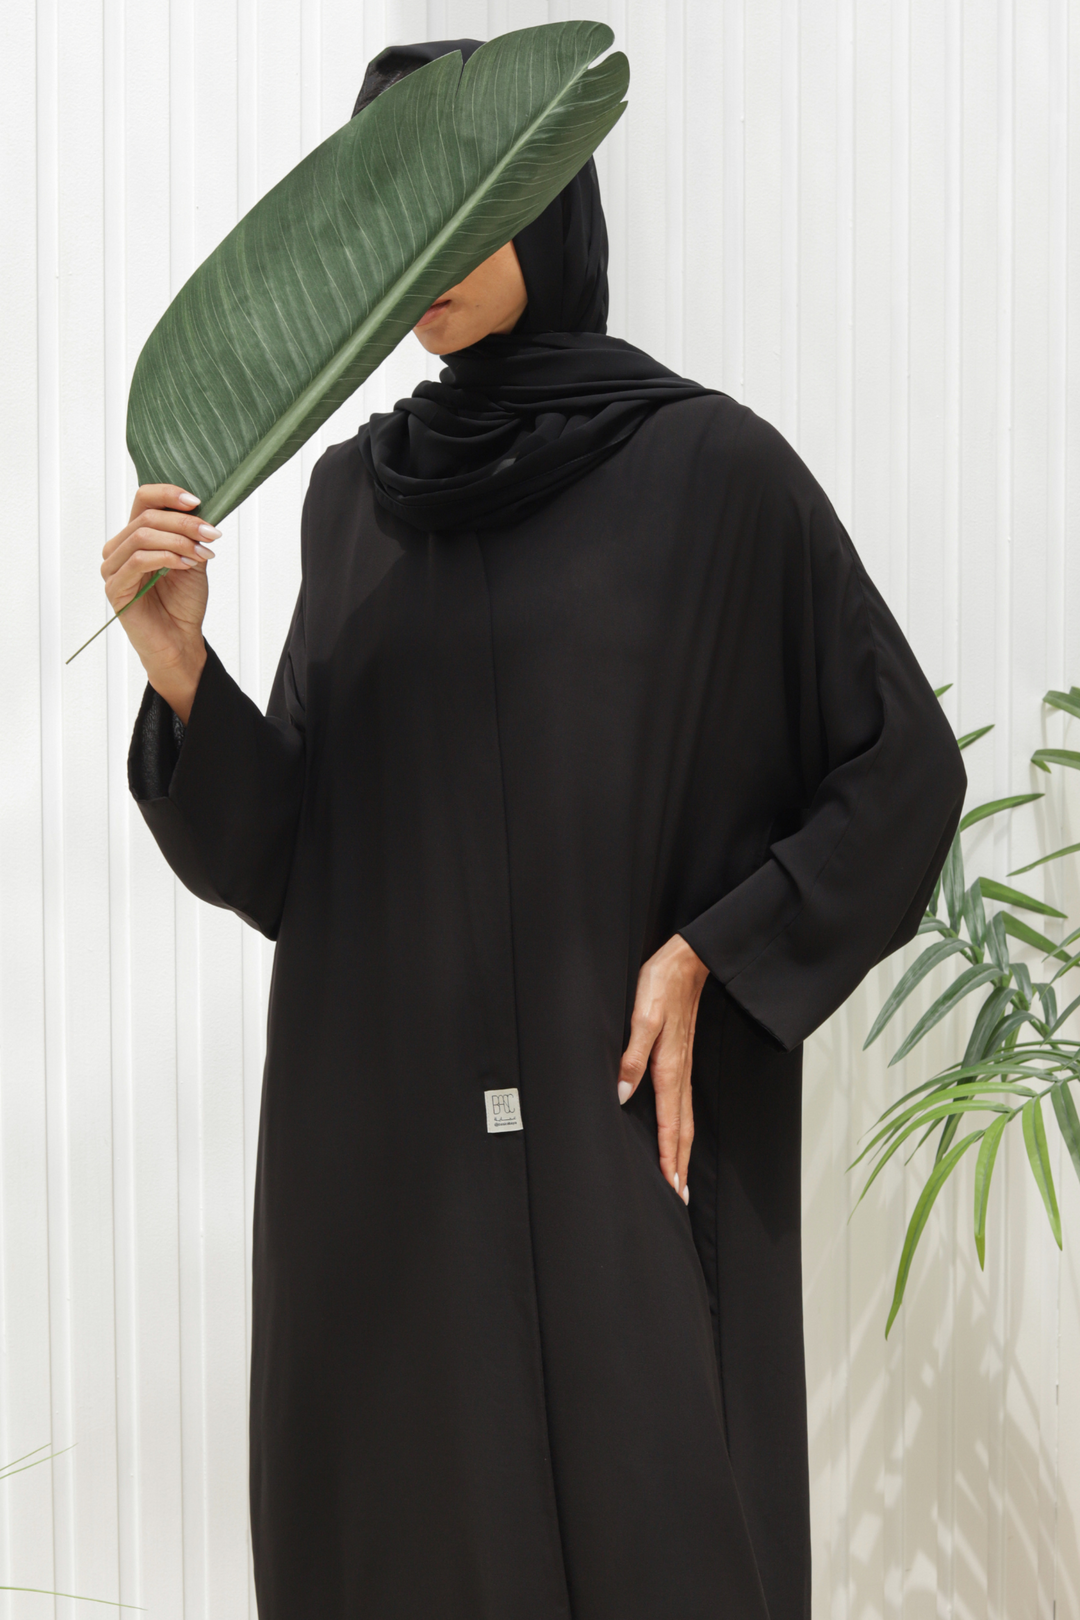 Basic Double (Black Abaya) - Ready to Wear